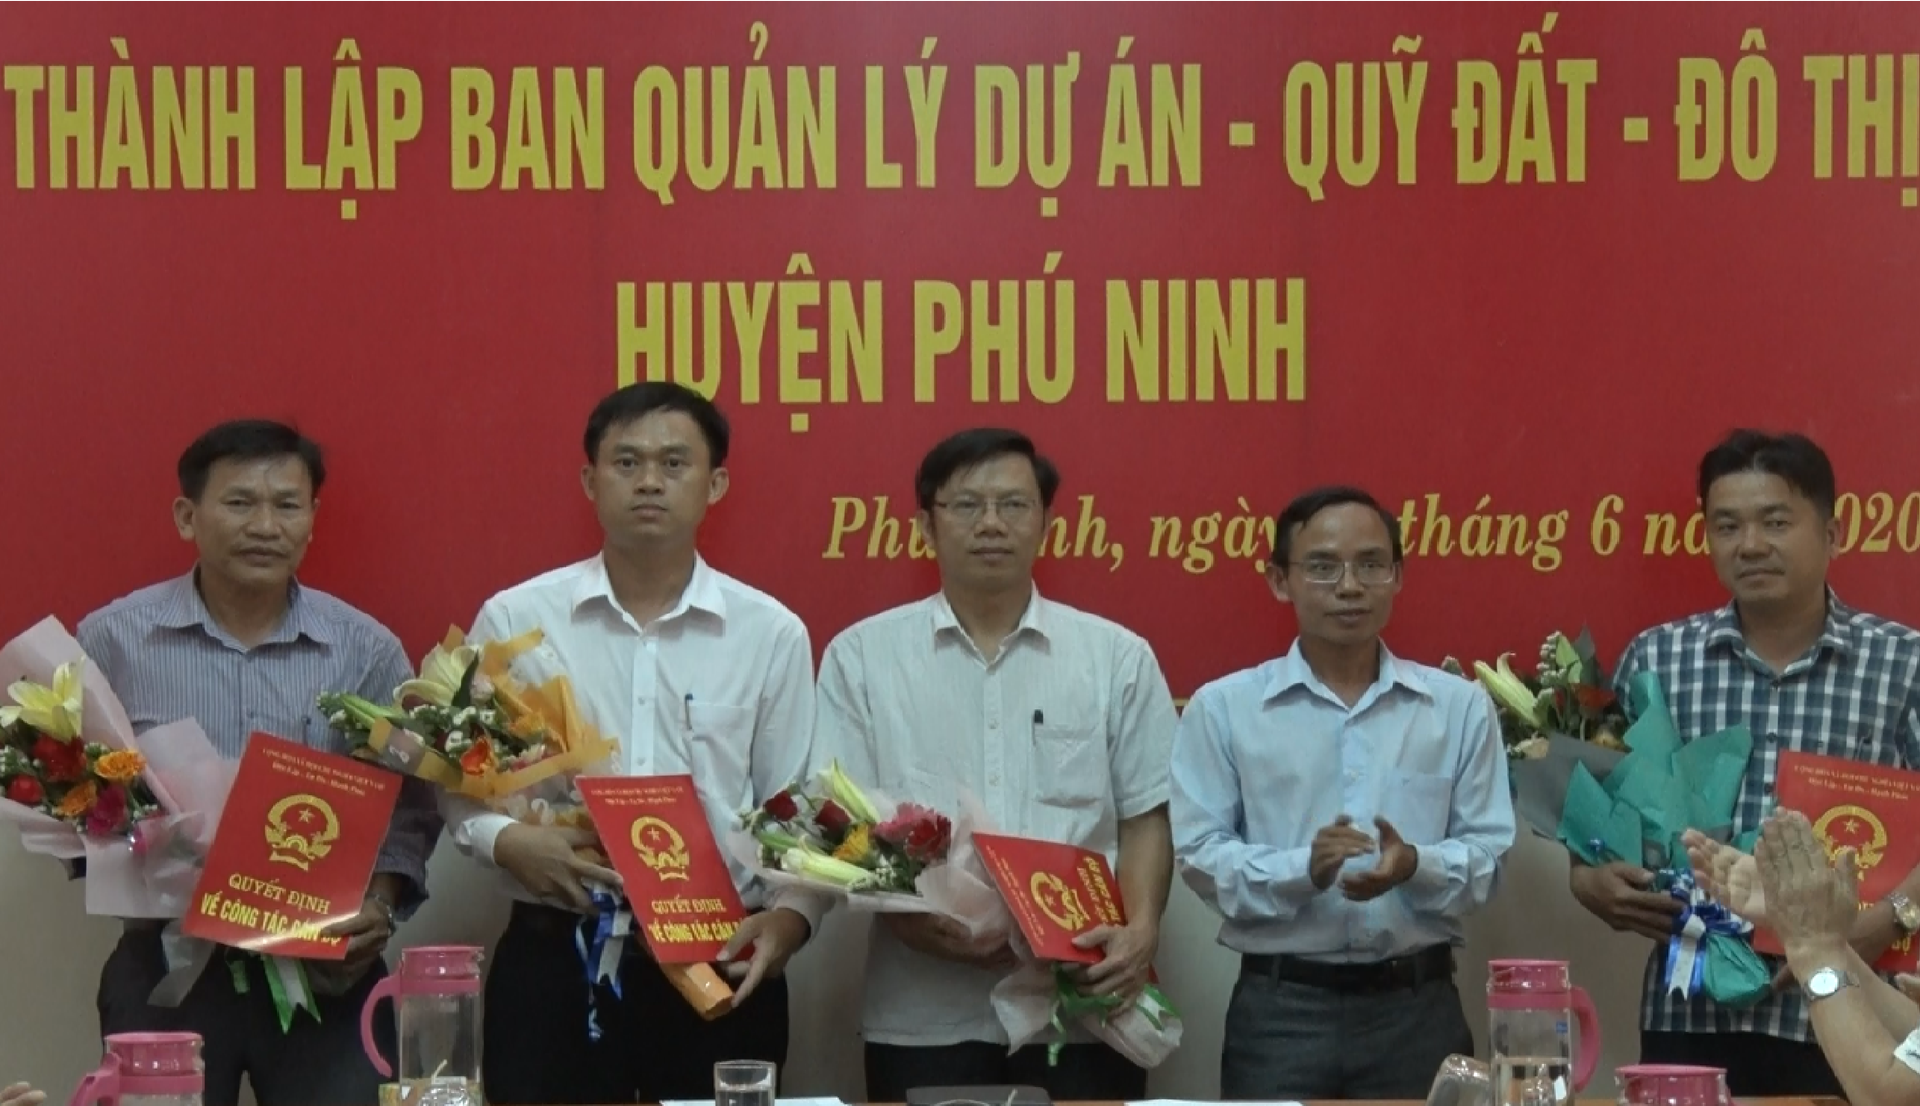 Lãnh đạo UBND huyện Phú Ninh trao quyết định và tặng hoa chúc mừng các cá nhân được bổ nhiệm giữ các chức vụ tại BQL Dự án - quỹ đất - đô thị huyện Phú Ninh. Ảnh: Q.V